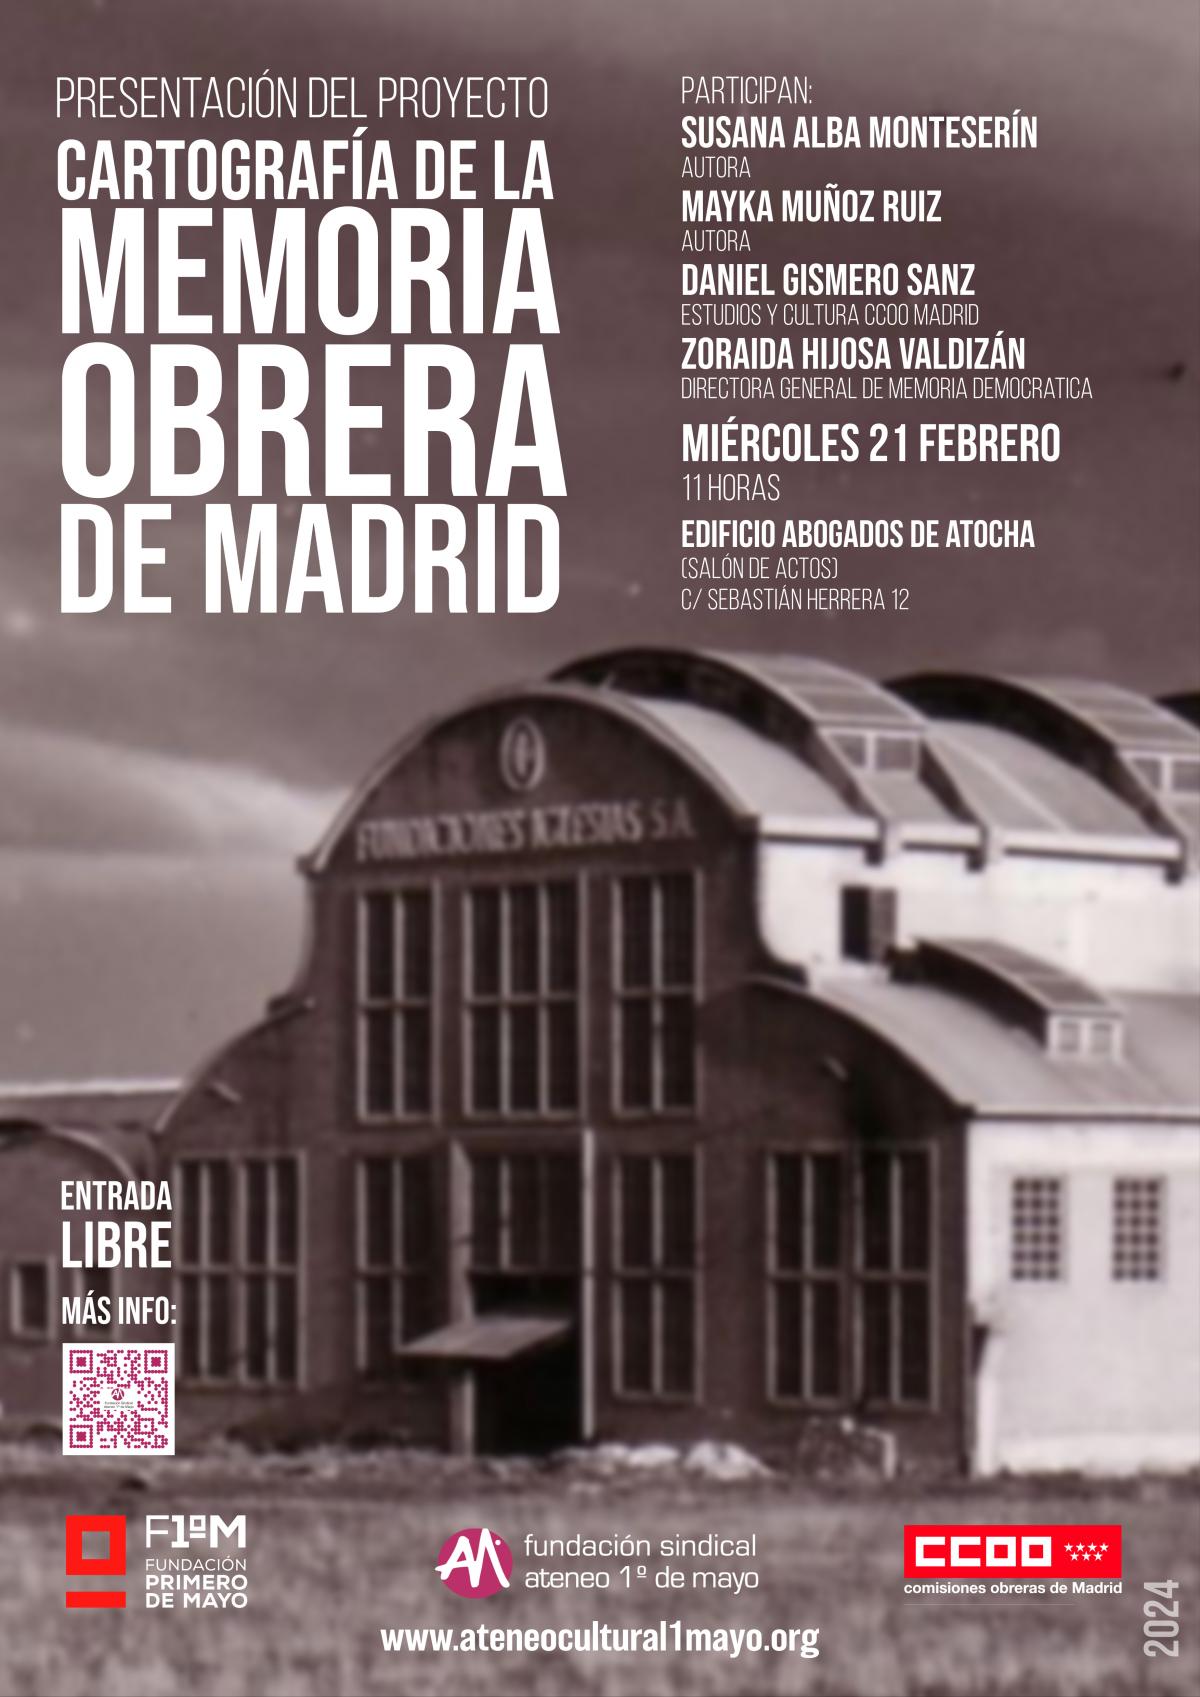 Cartografa de la memoria obrera de Madrid CARTEL